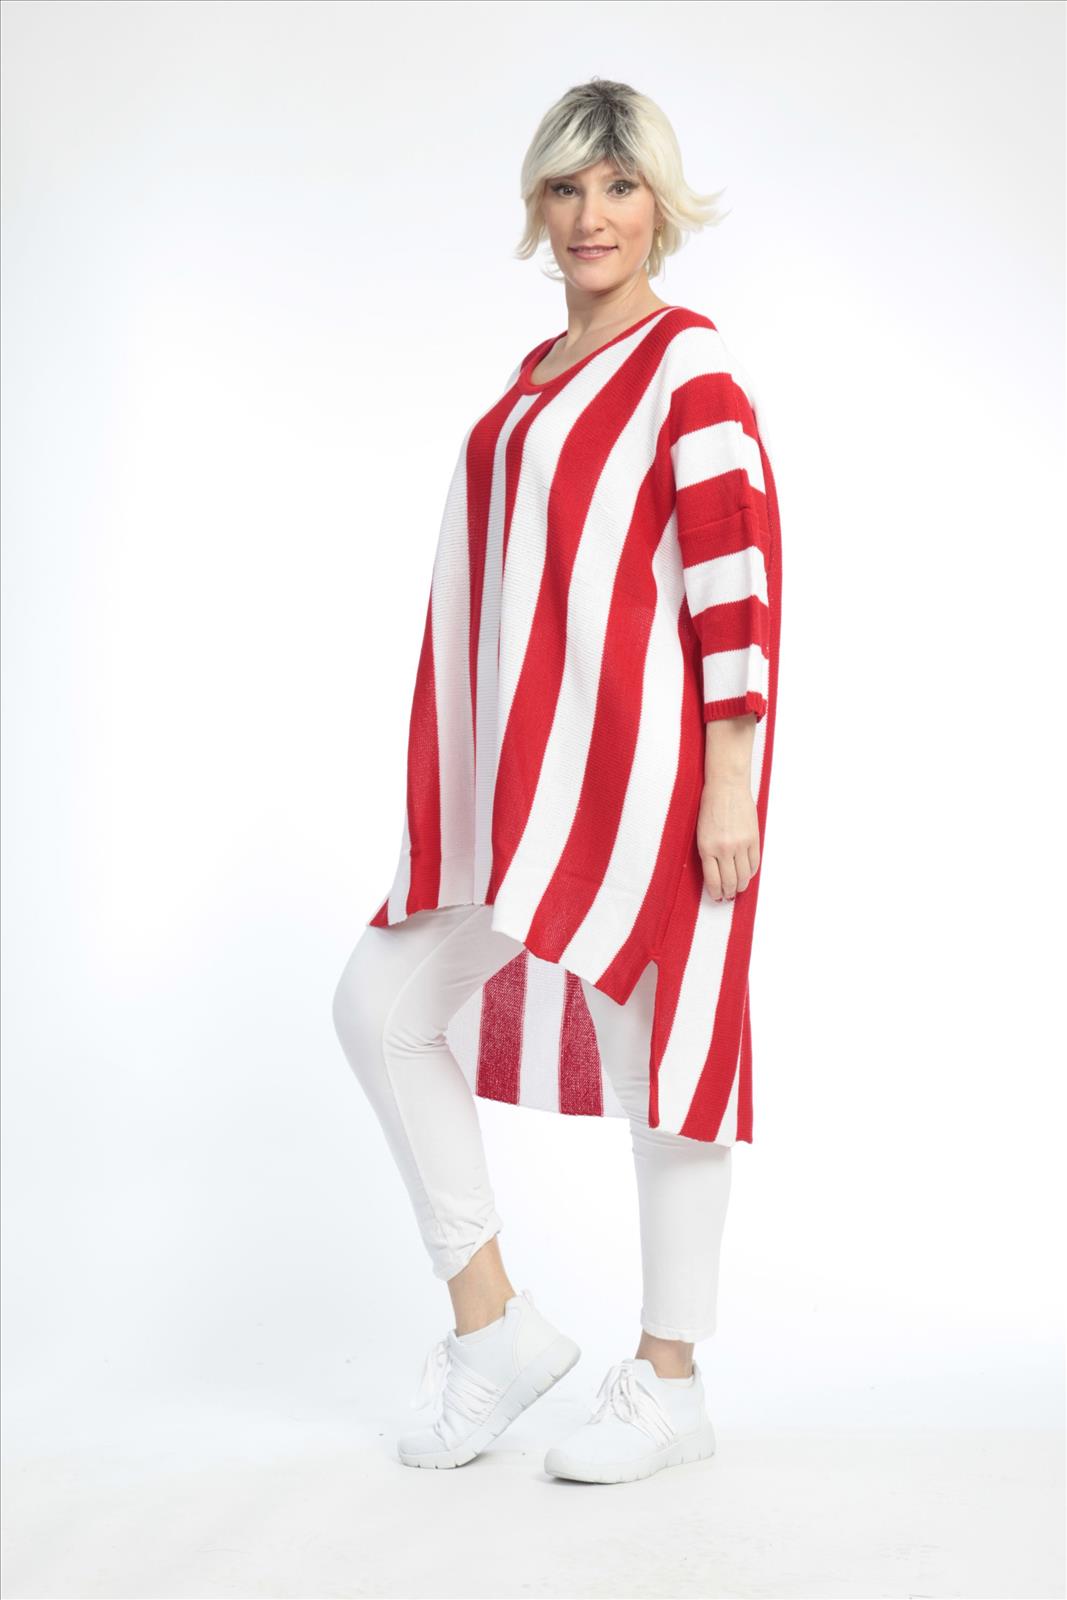 Alltags Pullover in Vokuhila Form aus feiner Strick Qualität, Strick in Rot-Weiß